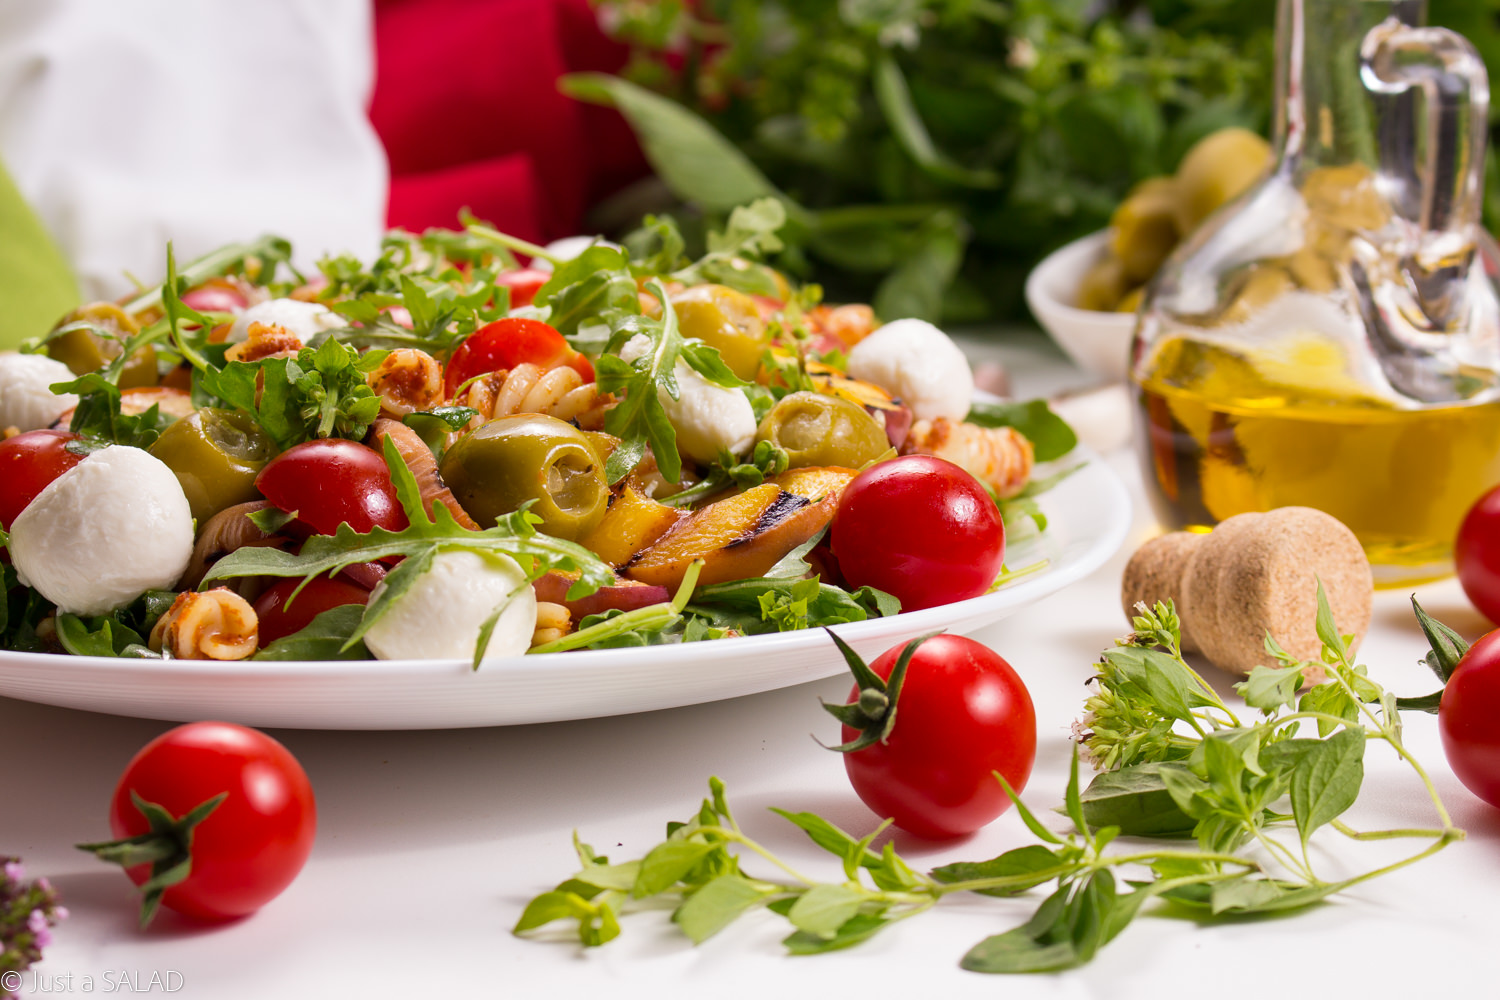 Włoska strona lata. Sałatka z makaronem w pomidorowym pesto, rukolą, pomidorkami, brzoskwiniami, oliwkami i mozzarellą.